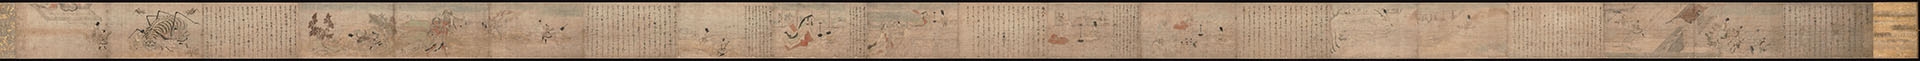 日本镰仓时代 土蜘蛛草纸画卷纸本(东京29×975